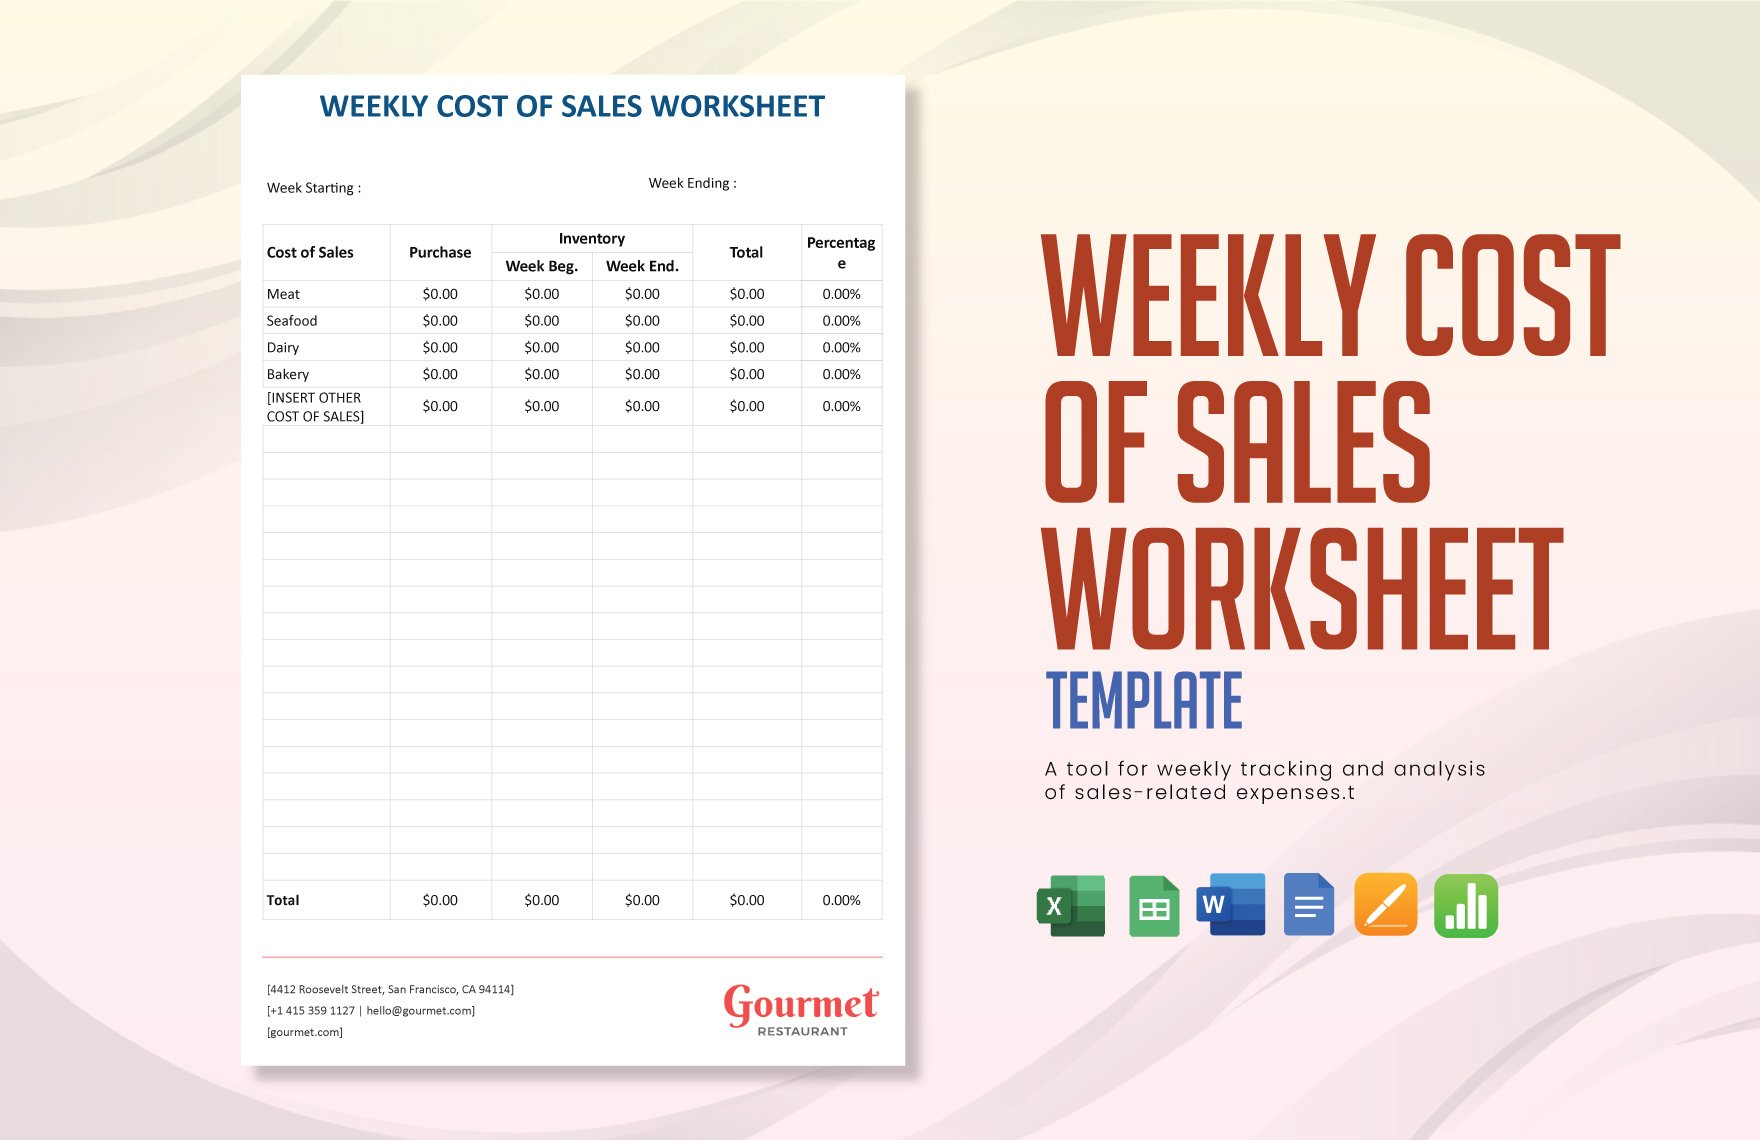 Weekly Cost of Sales Worksheet Template